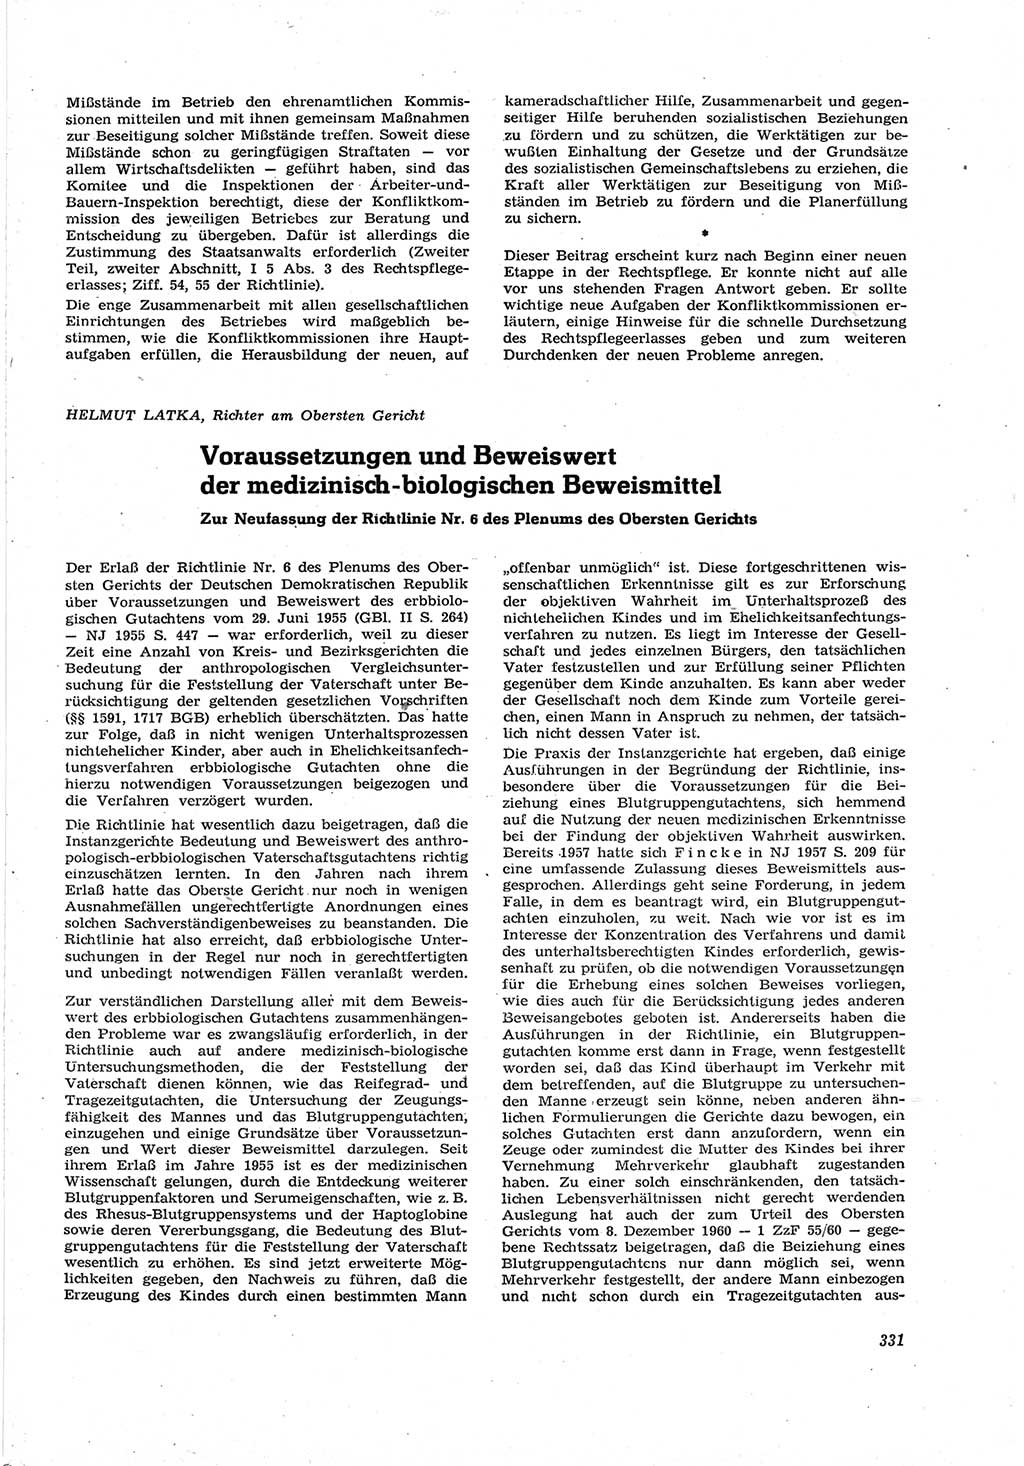 Neue Justiz (NJ), Zeitschrift für Recht und Rechtswissenschaft [Deutsche Demokratische Republik (DDR)], 17. Jahrgang 1963, Seite 331 (NJ DDR 1963, S. 331)